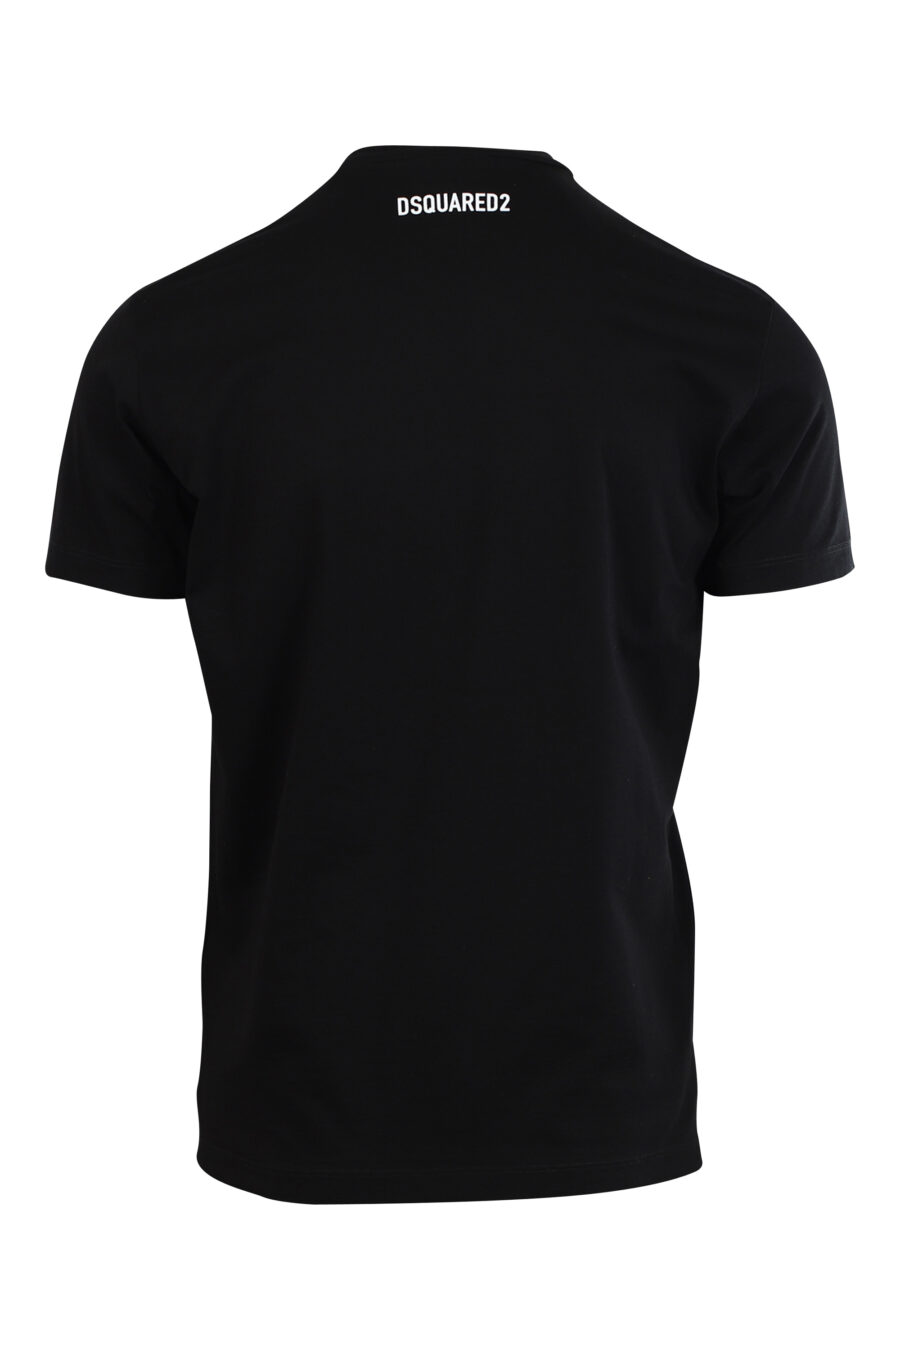 Camiseta negra con maxilogo perro "Pixeled" - 8052134980774 2